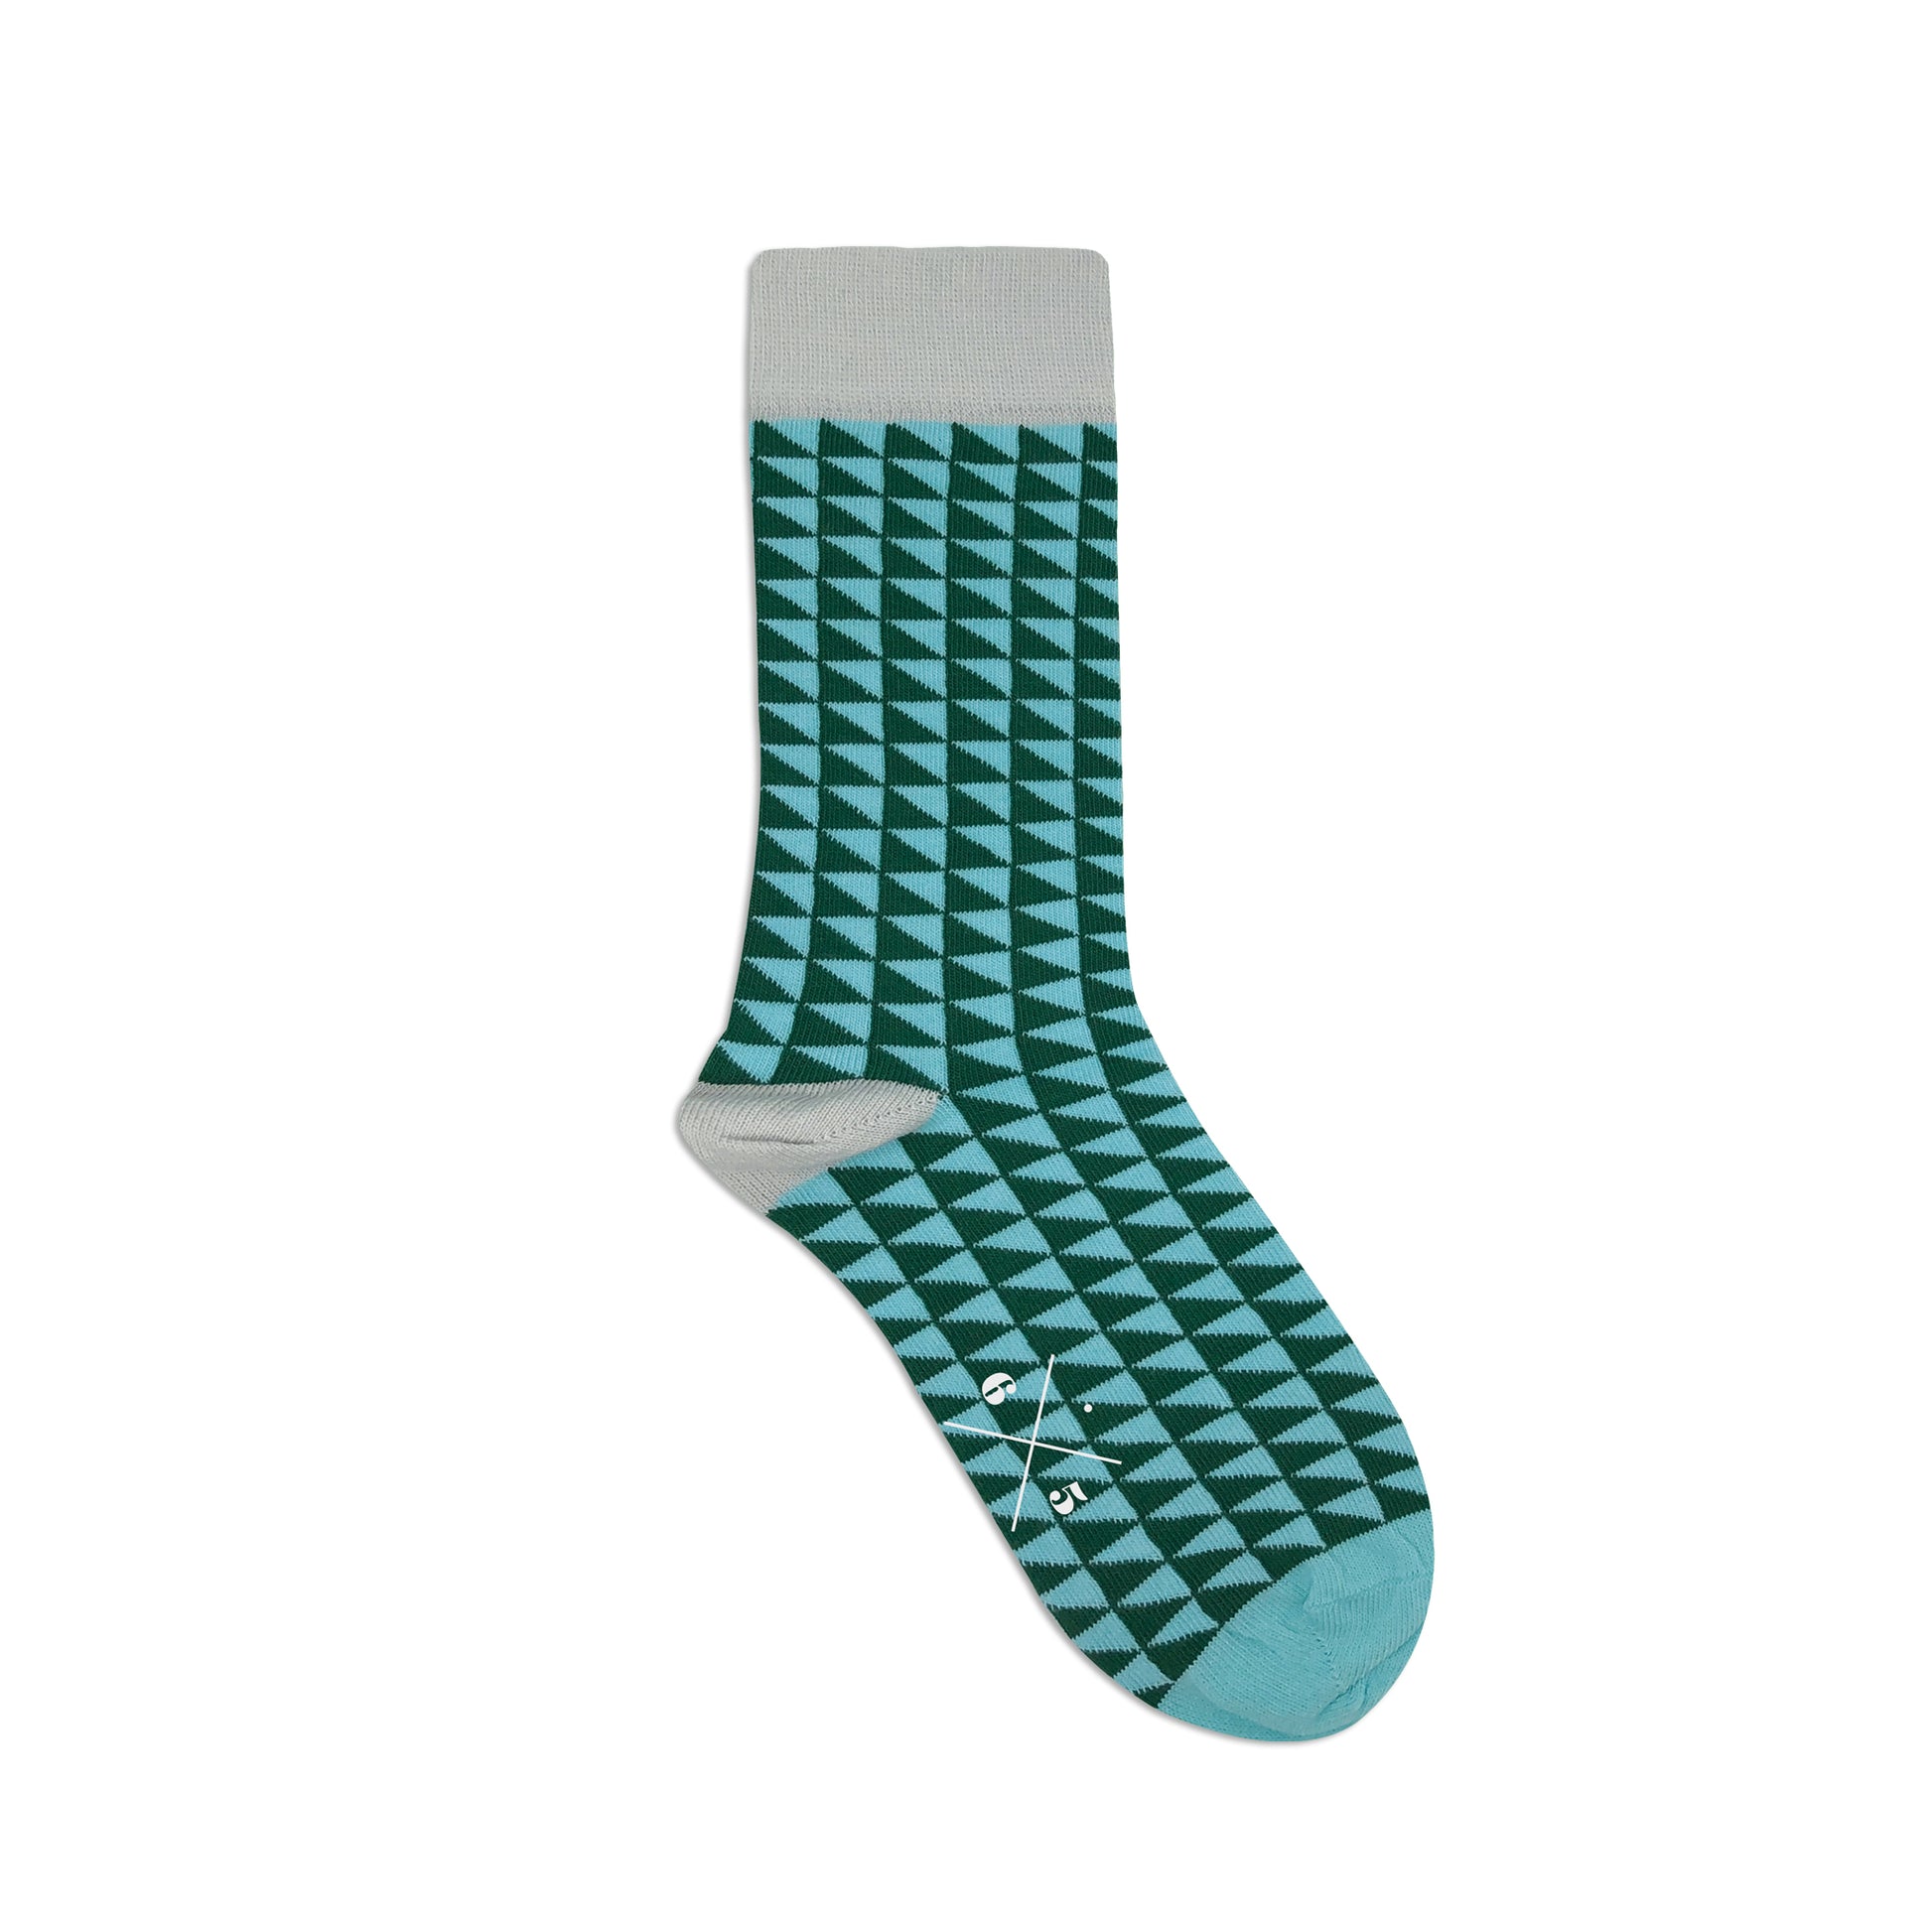 TWO TRIANGLES BLUE GREEN Mavi Yeşil Üçgen Desenli Unisex Çorap - sixtimesfive